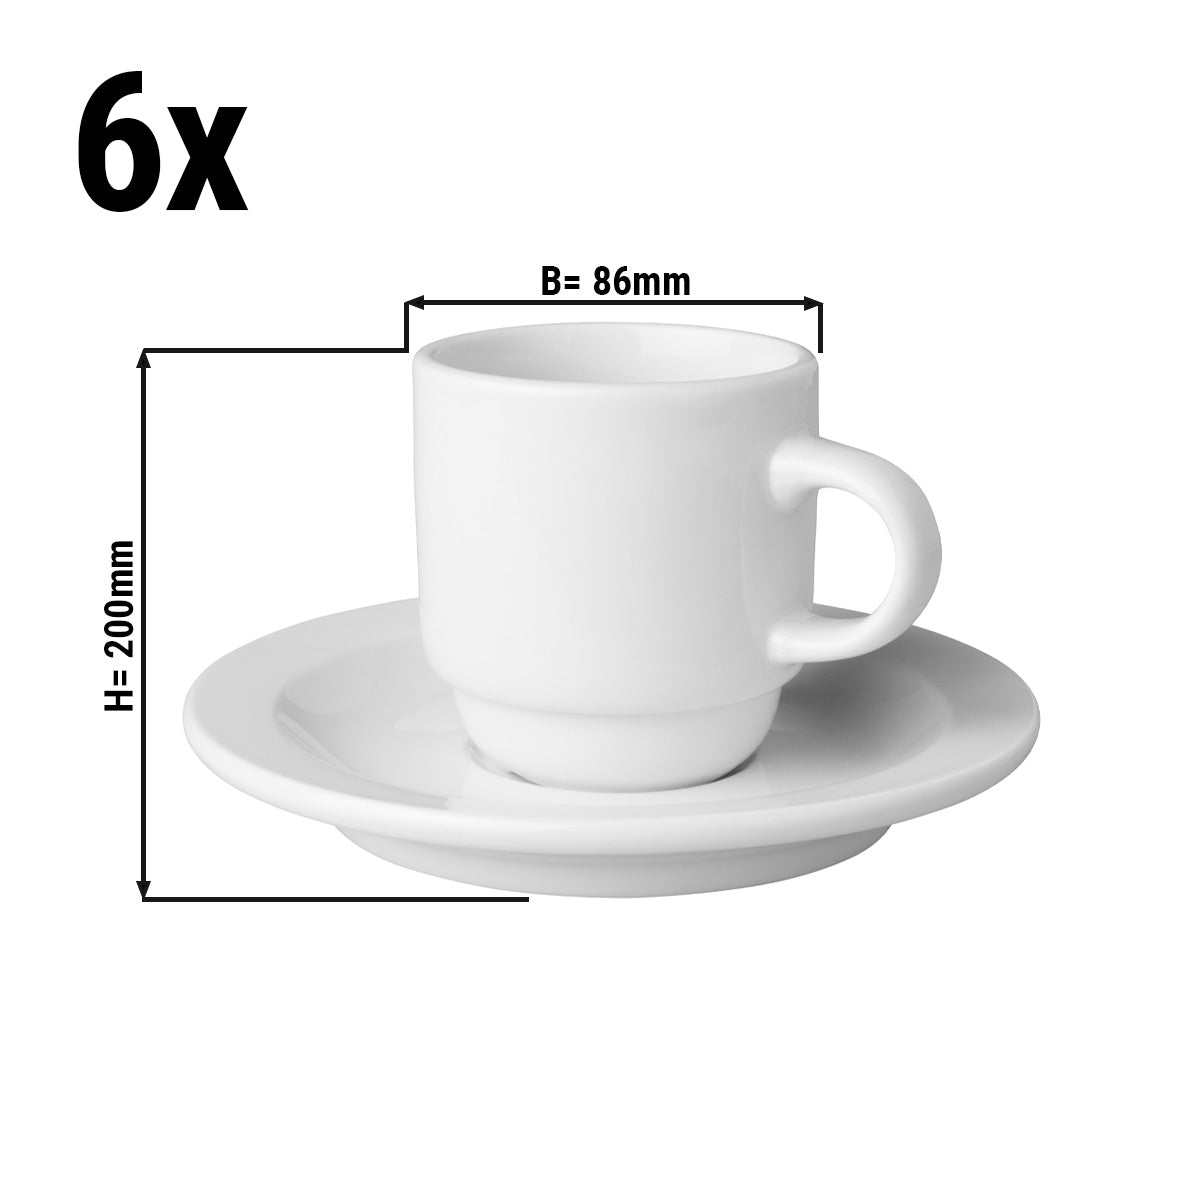 (24 stk) Kaffekopper + fett Mammoet - 14 cl - Hvit